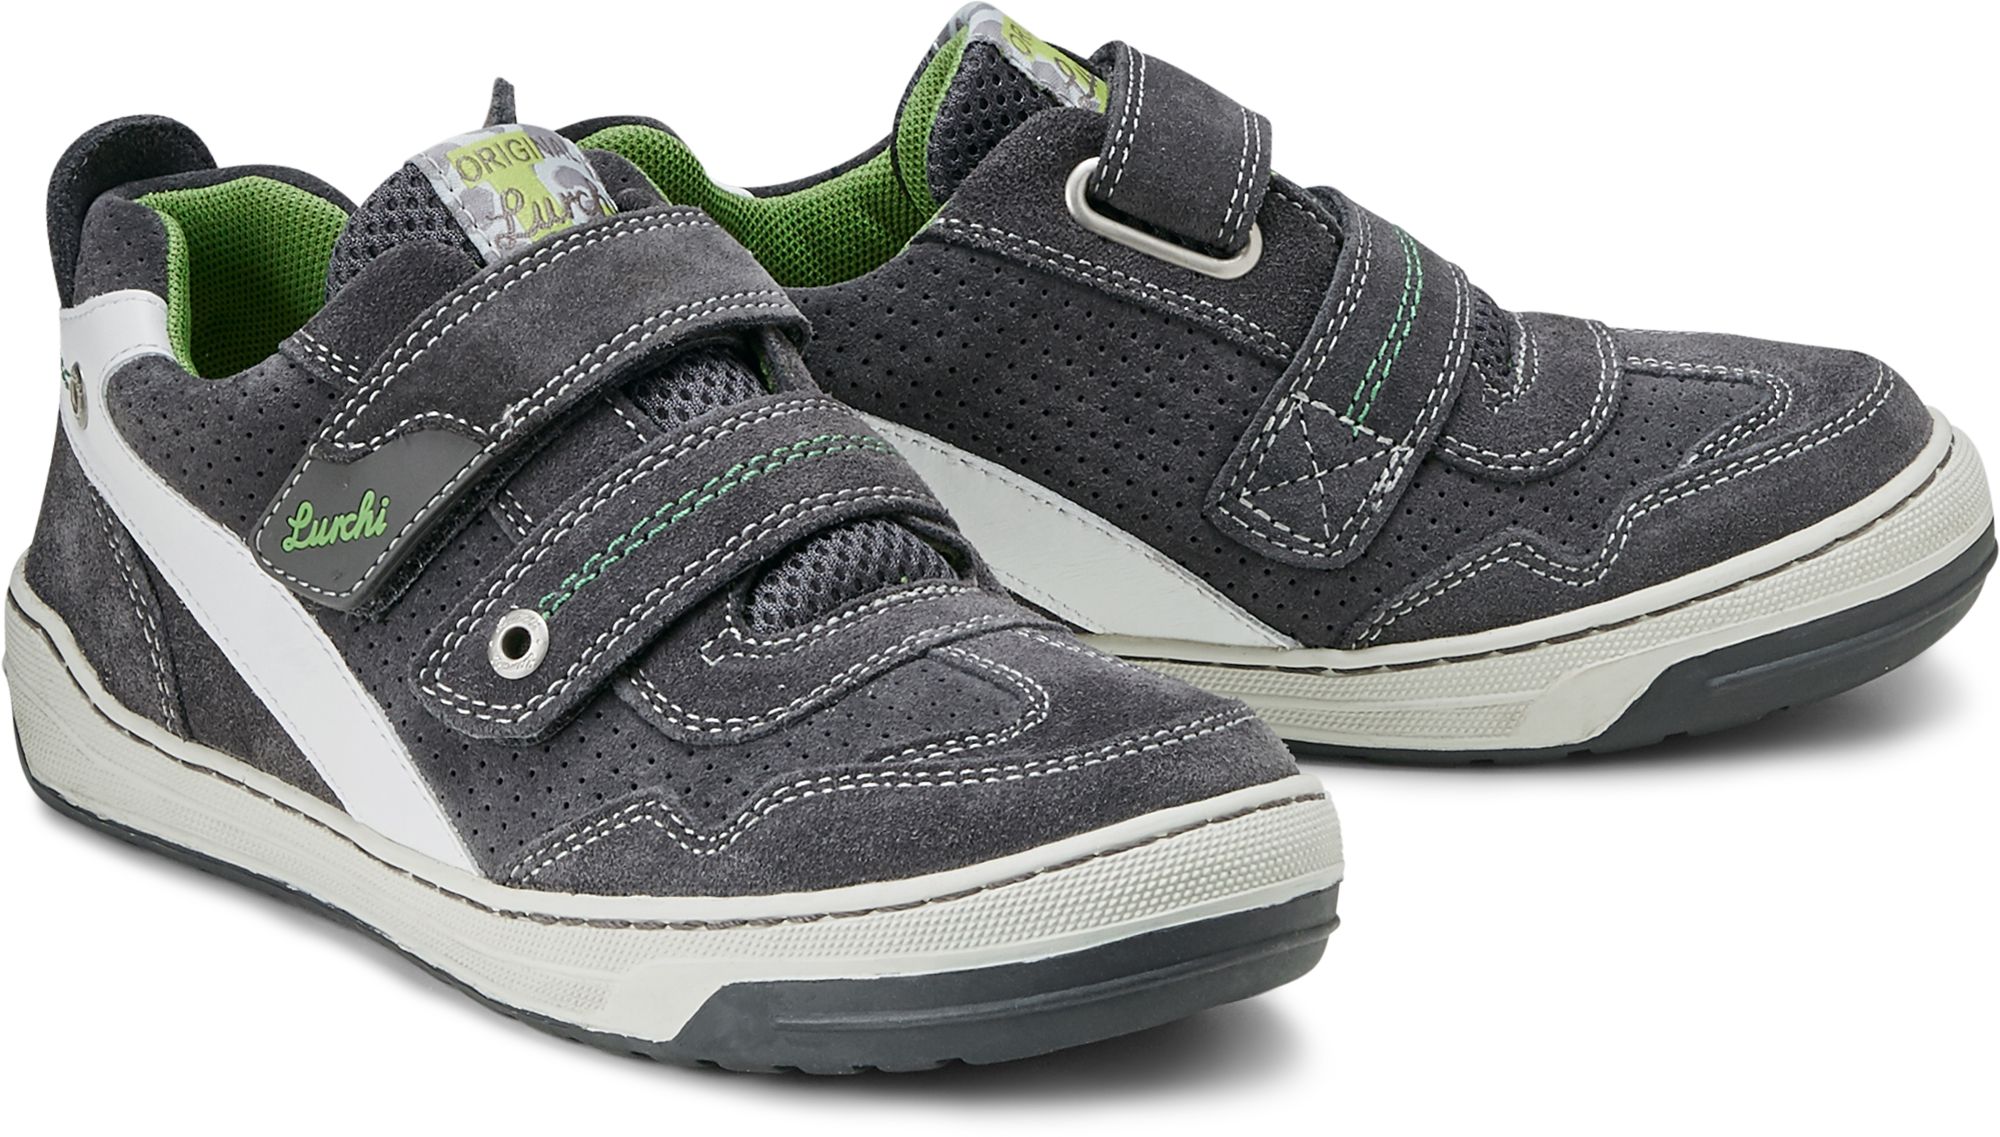 Lurchi für dunkel Gr. 27,28,29,30,31,32,33,34,35 von Schuhe Jungen. online BRUCE grau Klett kaufen in Sneaker